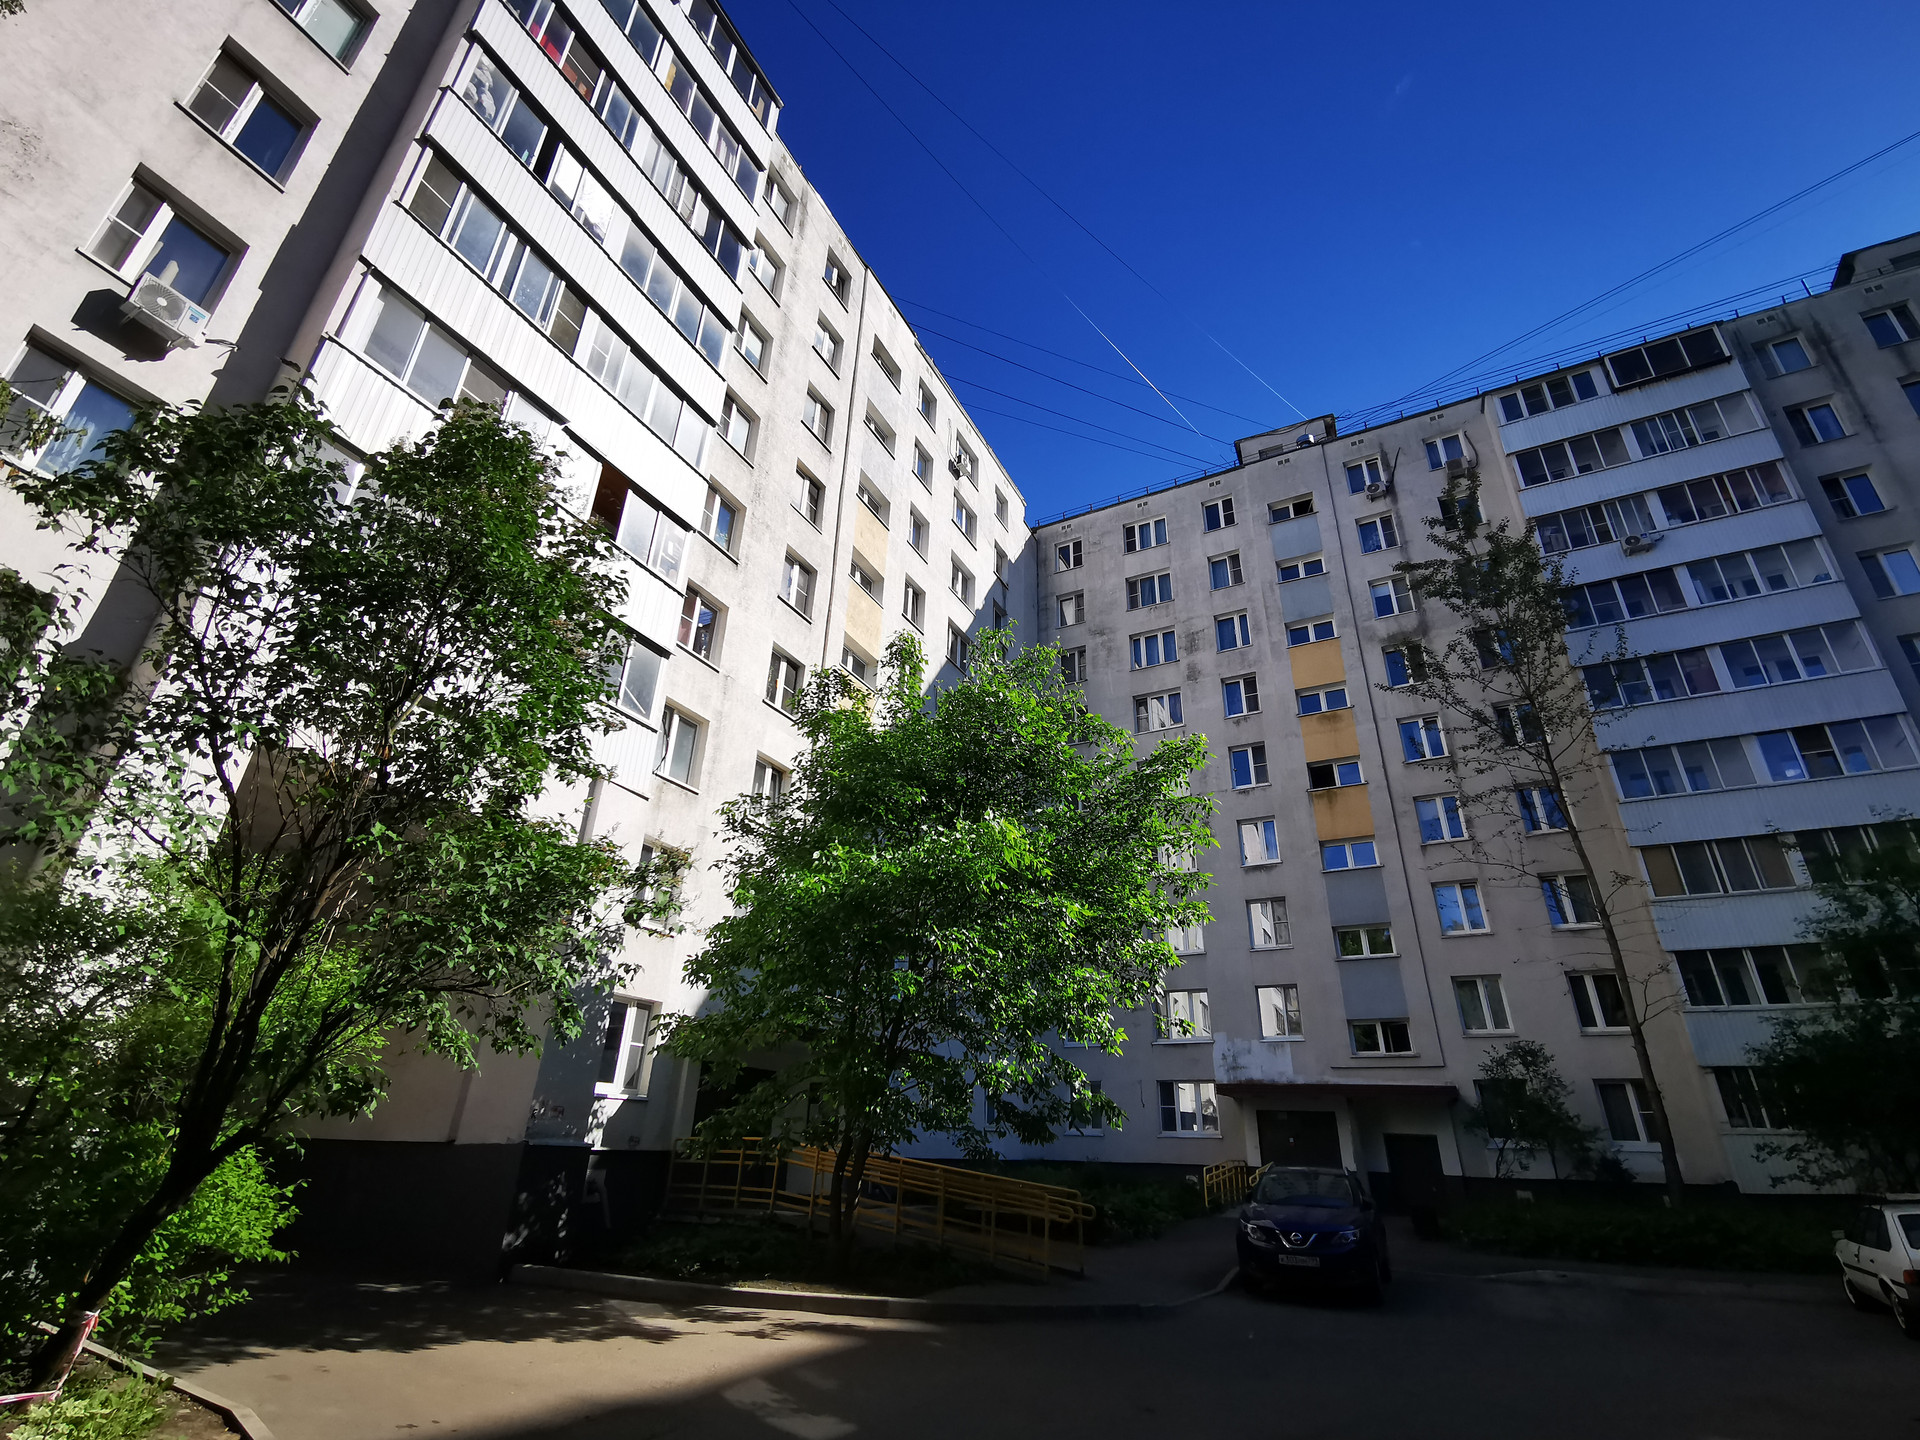 Ясенево купить 1 квартиру. Беляево купить квартиру.